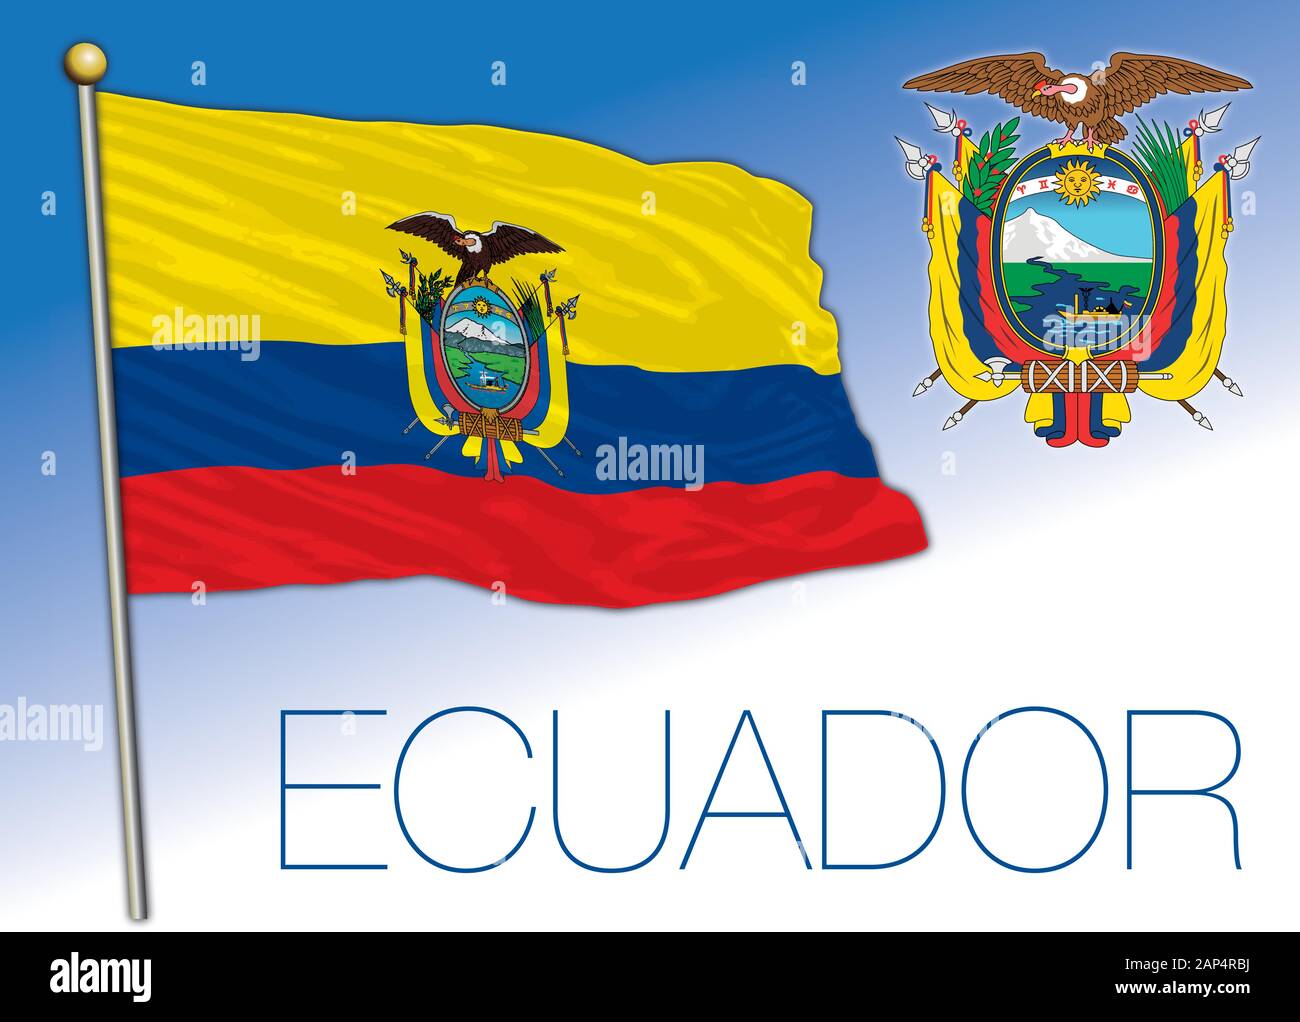 Ecuador bandiera ufficiale nazionale e cappotto di Vrms, paese sudamericano, illustrazione vettoriale Illustrazione Vettoriale